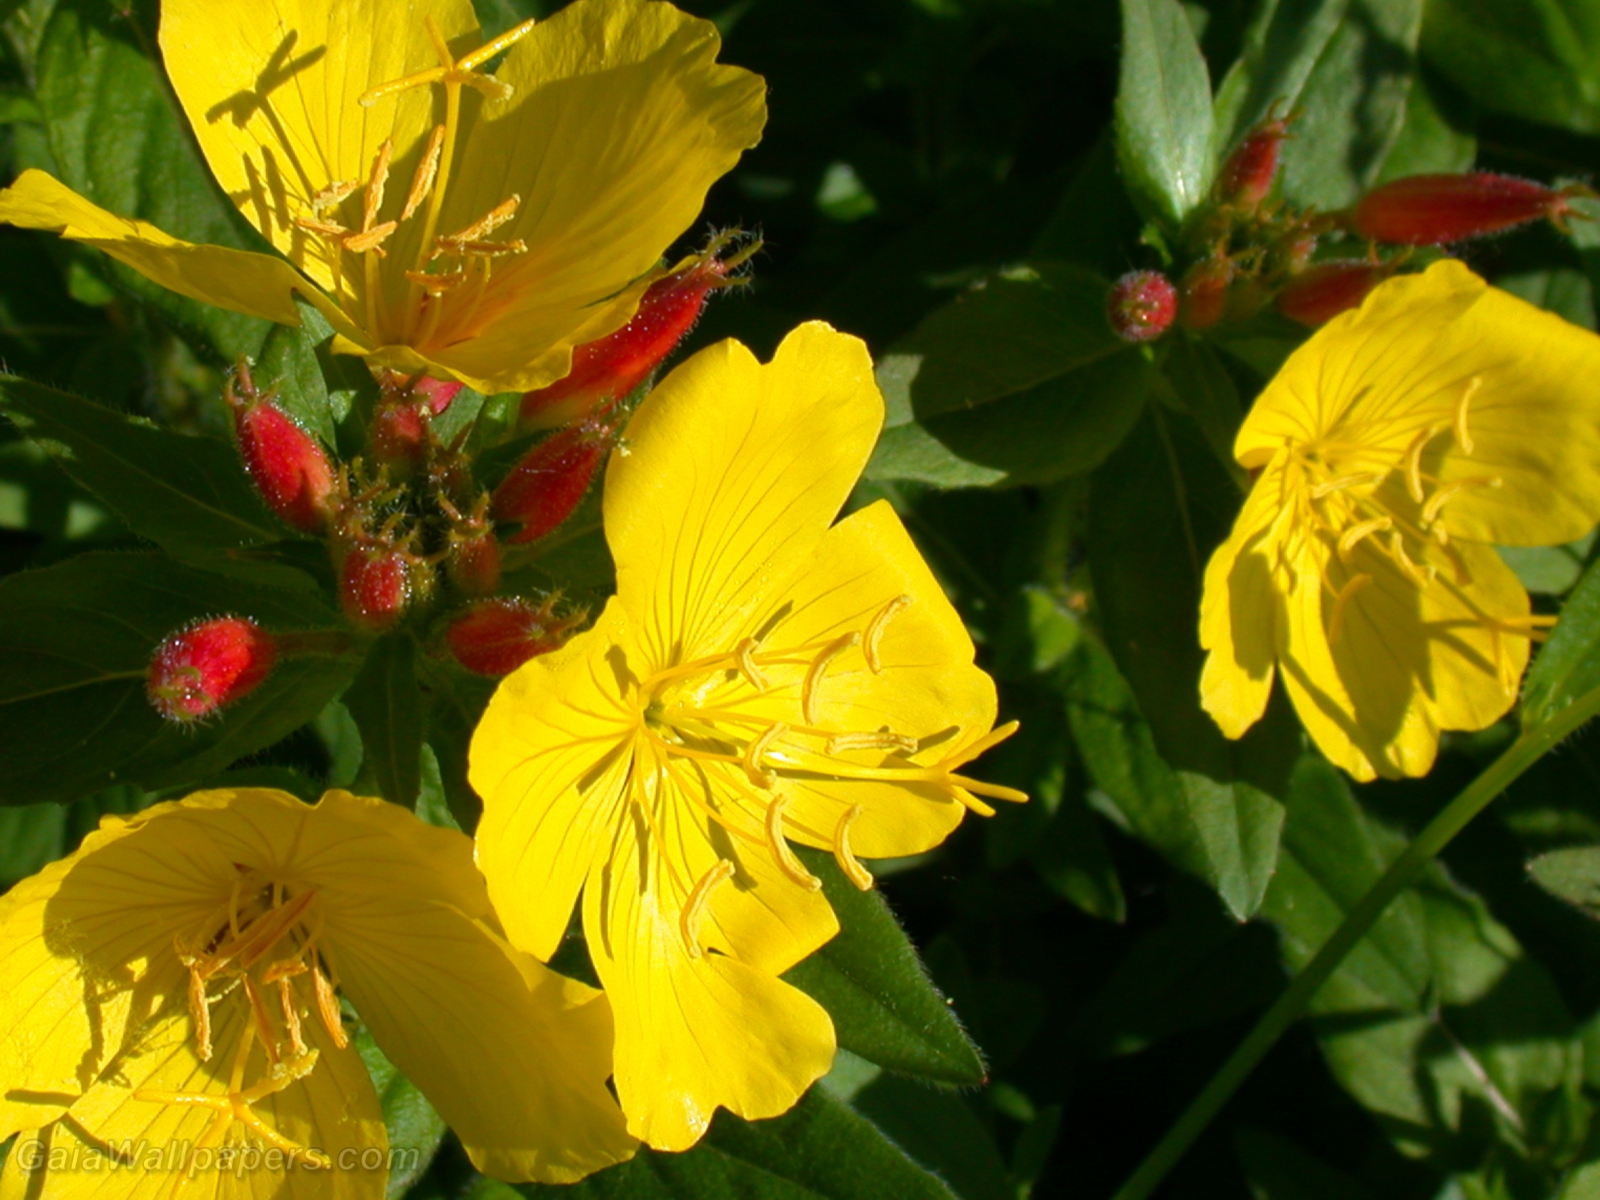 Belles fleurs jaunes appréciant le soleil matinal - Fonds d'écran gratuits